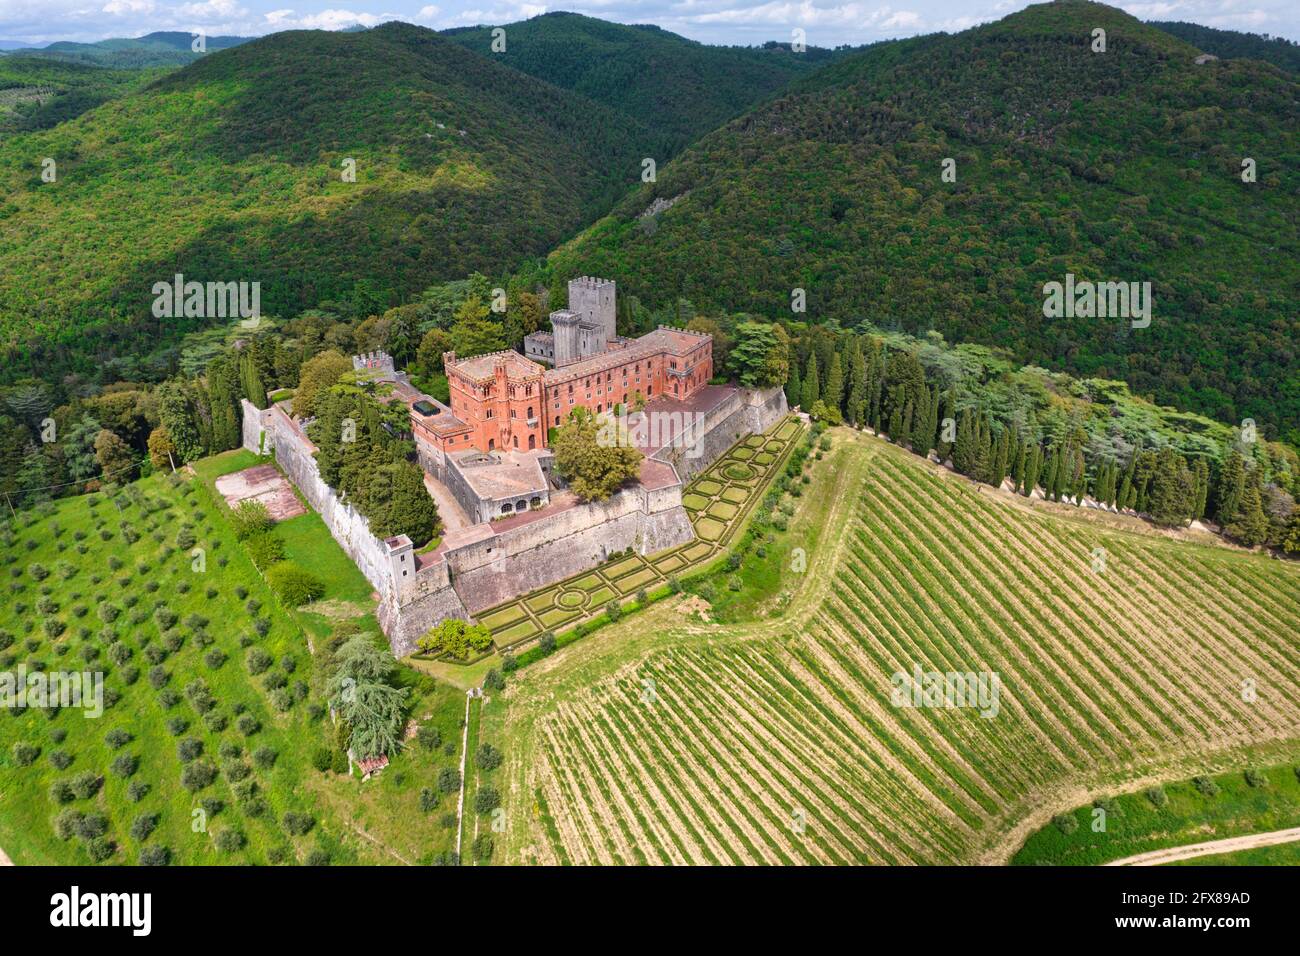 Il Chianti, il Castello di Brolio, il Castello di Volpaia, Ricasoli vigneto, in provincia di Siena, Toscana, Italia Foto Stock